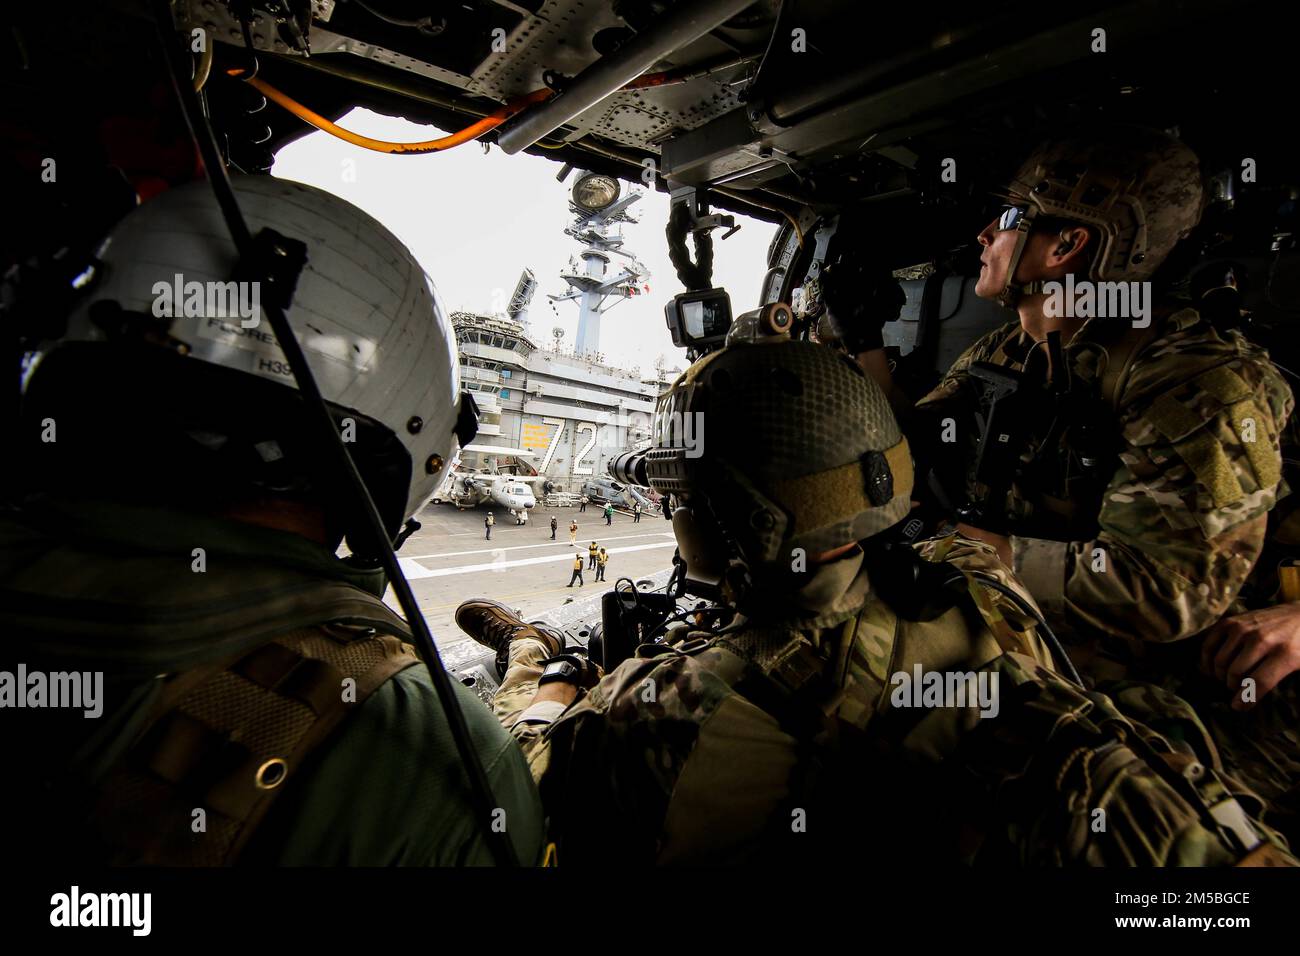 PHILIPPINISCHE SEELEUTE (22. Februar 2022), die der mobilen Einheit für die Entsorgung von Sprengstoffen (EODMU) 3 zugeteilt sind, fliegen in einem MH-60s Sea Hawk Hubschrauber, der den ‚Chargers‘ der Helicopter Sea Combat Squadron (HSC) 14 zugeteilt ist, nach dem Abflug vom Cockpit des Flugzeugträgers USS Abraham Lincoln der Nimitz-Klasse (CVN 72) in Vorbereitung auf die Ausbildung im Hubschrauber, Besuch, Einstieg, Durchsuchung und Beschlagnahme (HVBSS). Die Abraham Lincoln Strike Group wird planmäßig im 7.-Flottenbereich der USA eingesetzt, um die Interoperabilität durch Allianzen und Partnerschaften zu verbessern und gleichzeitig als Stockfoto